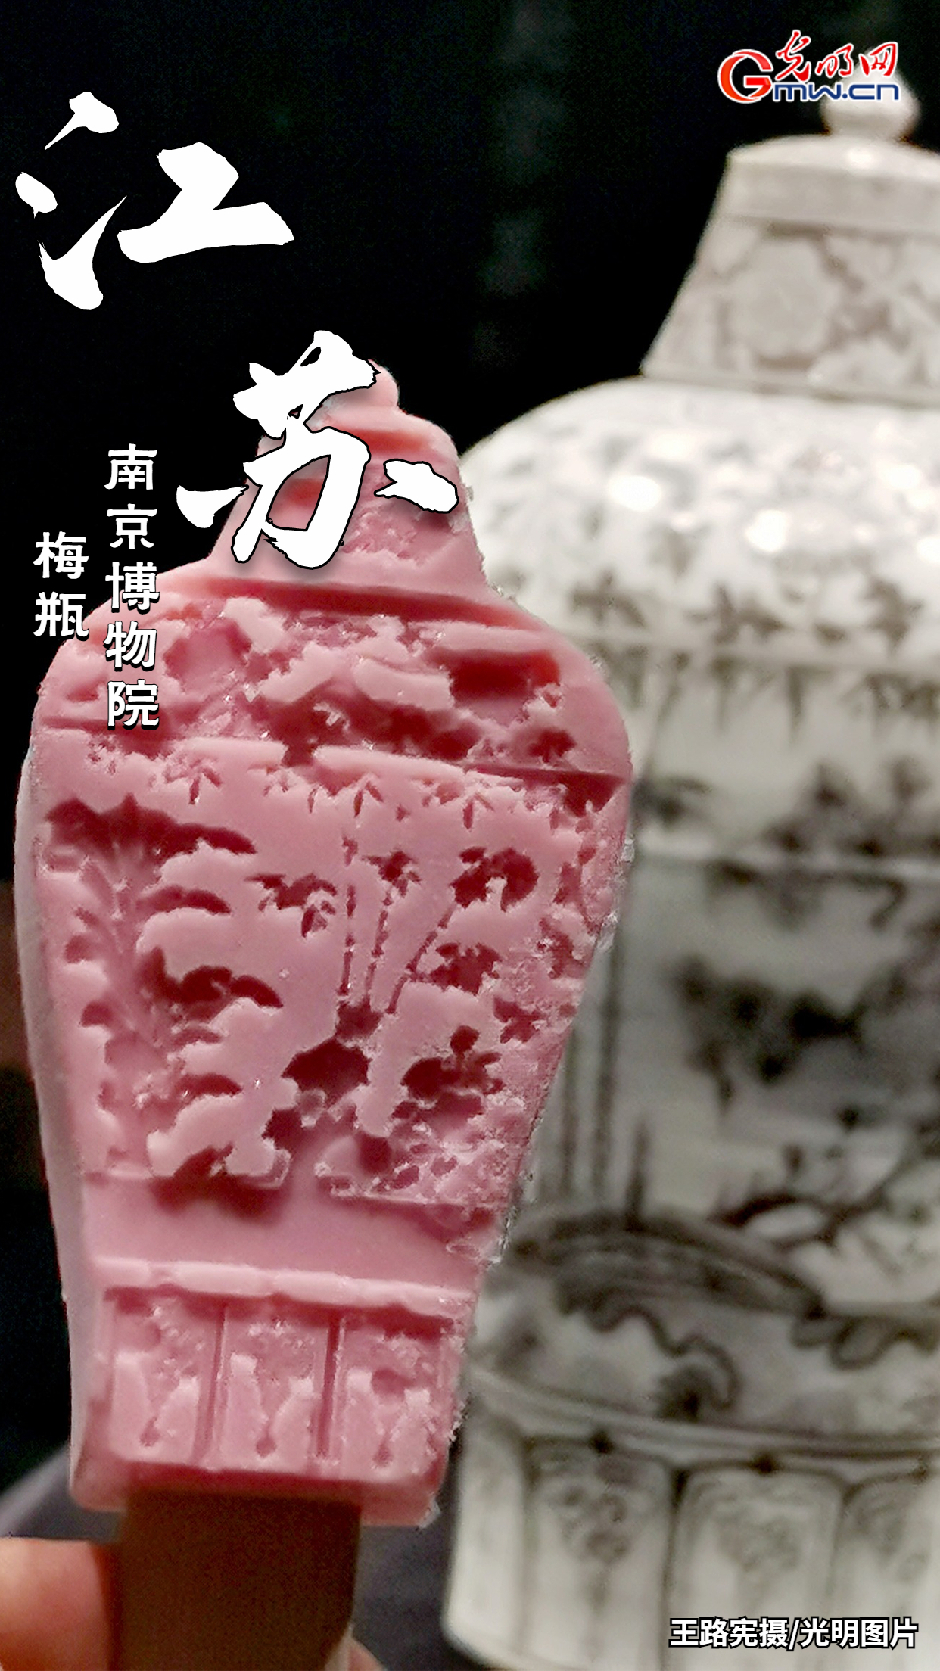 【百姓微生活】“冰”雪糕迎来“热”消费